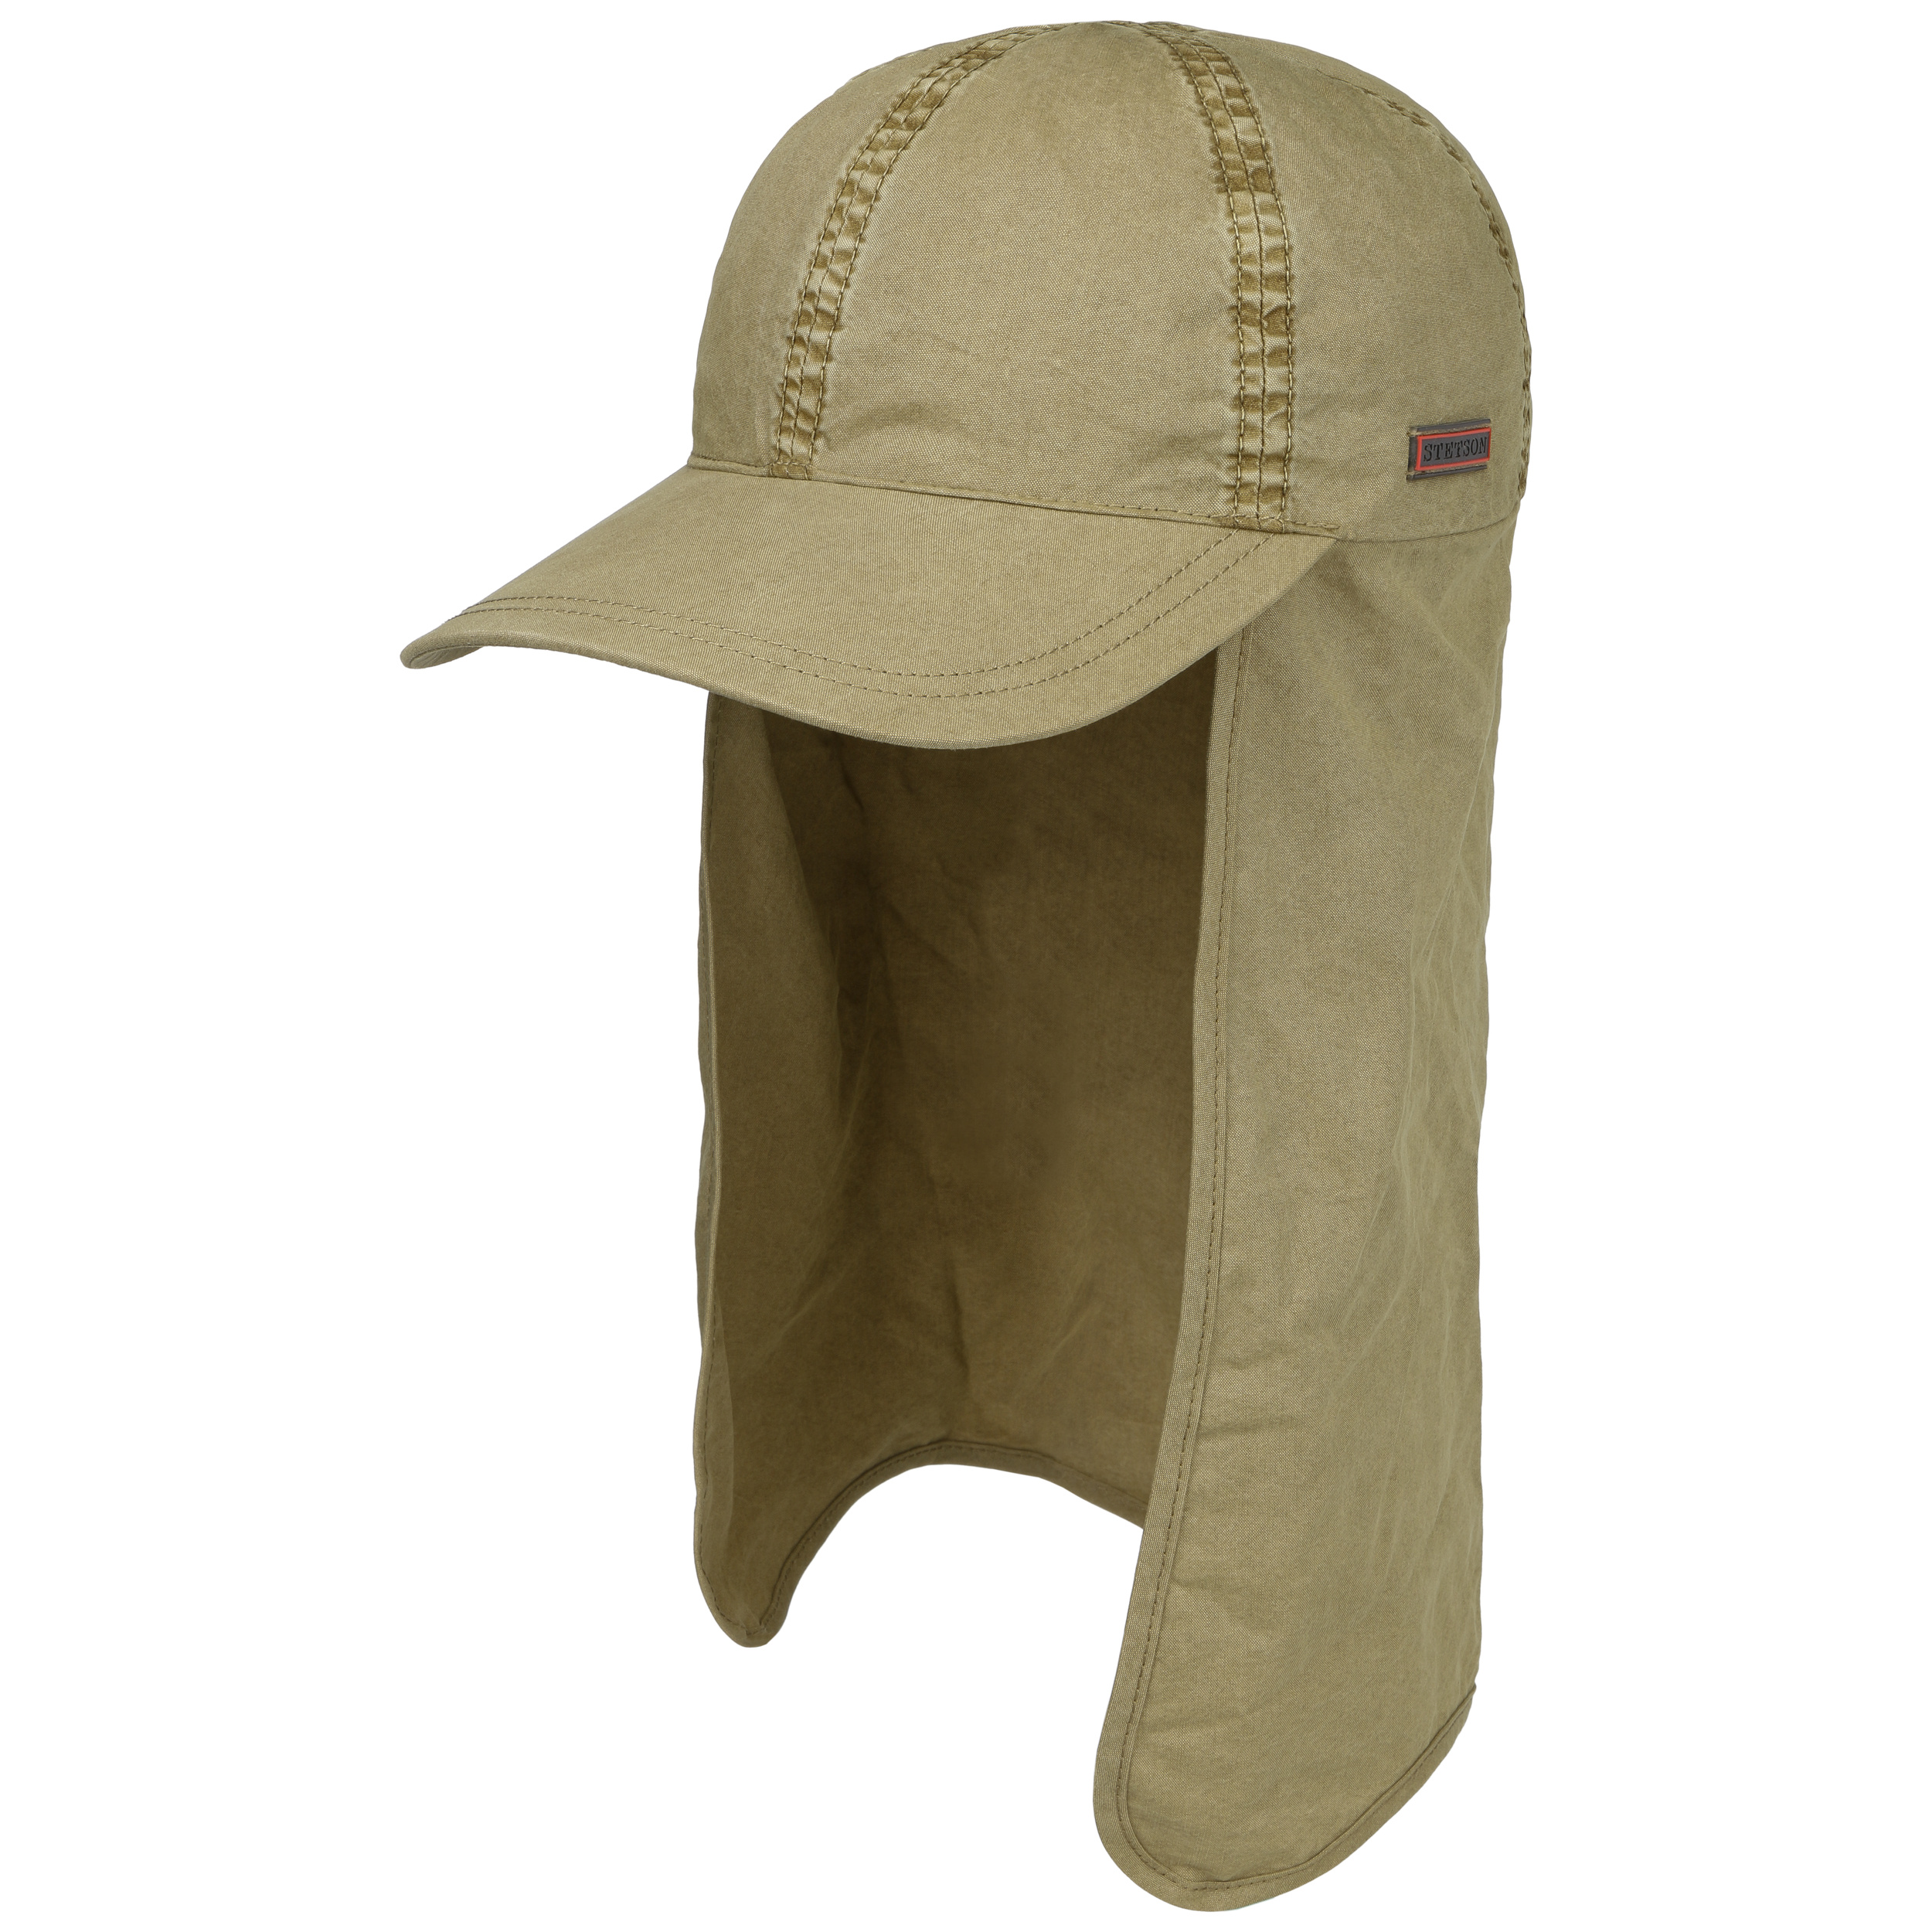 Stetson Baseball Hats & Caps